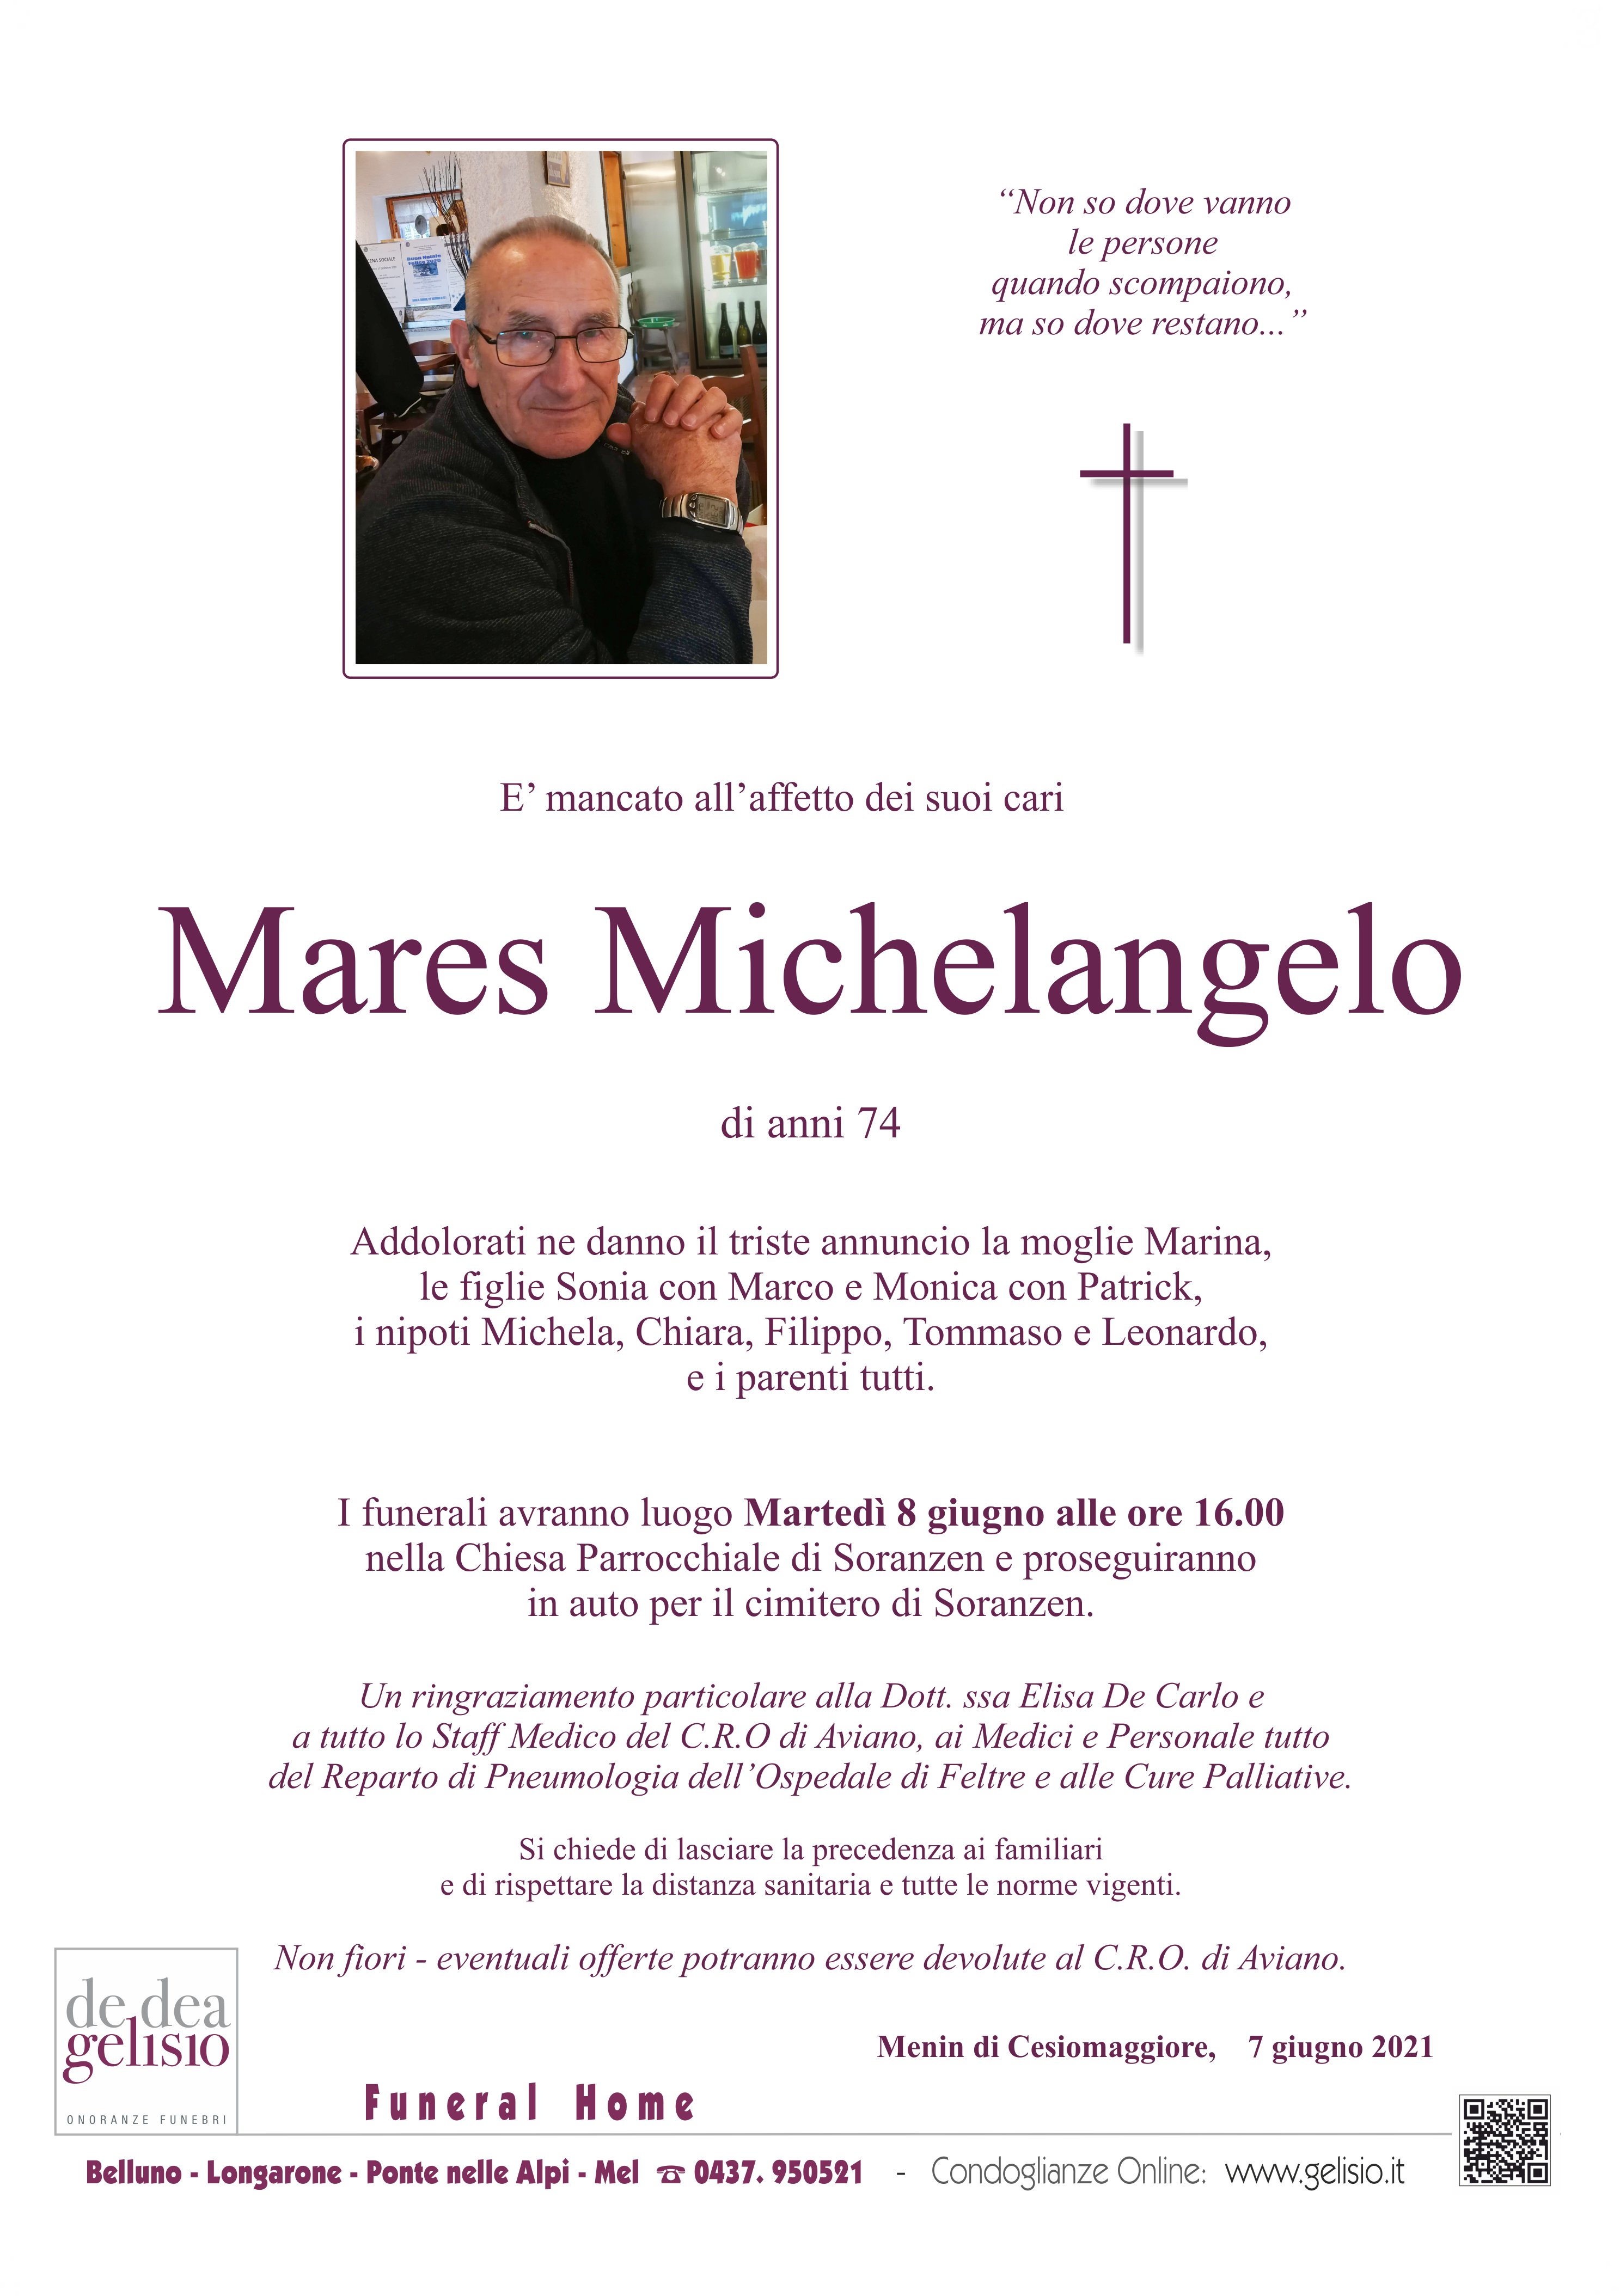 Mares_Michelangelo.jpg